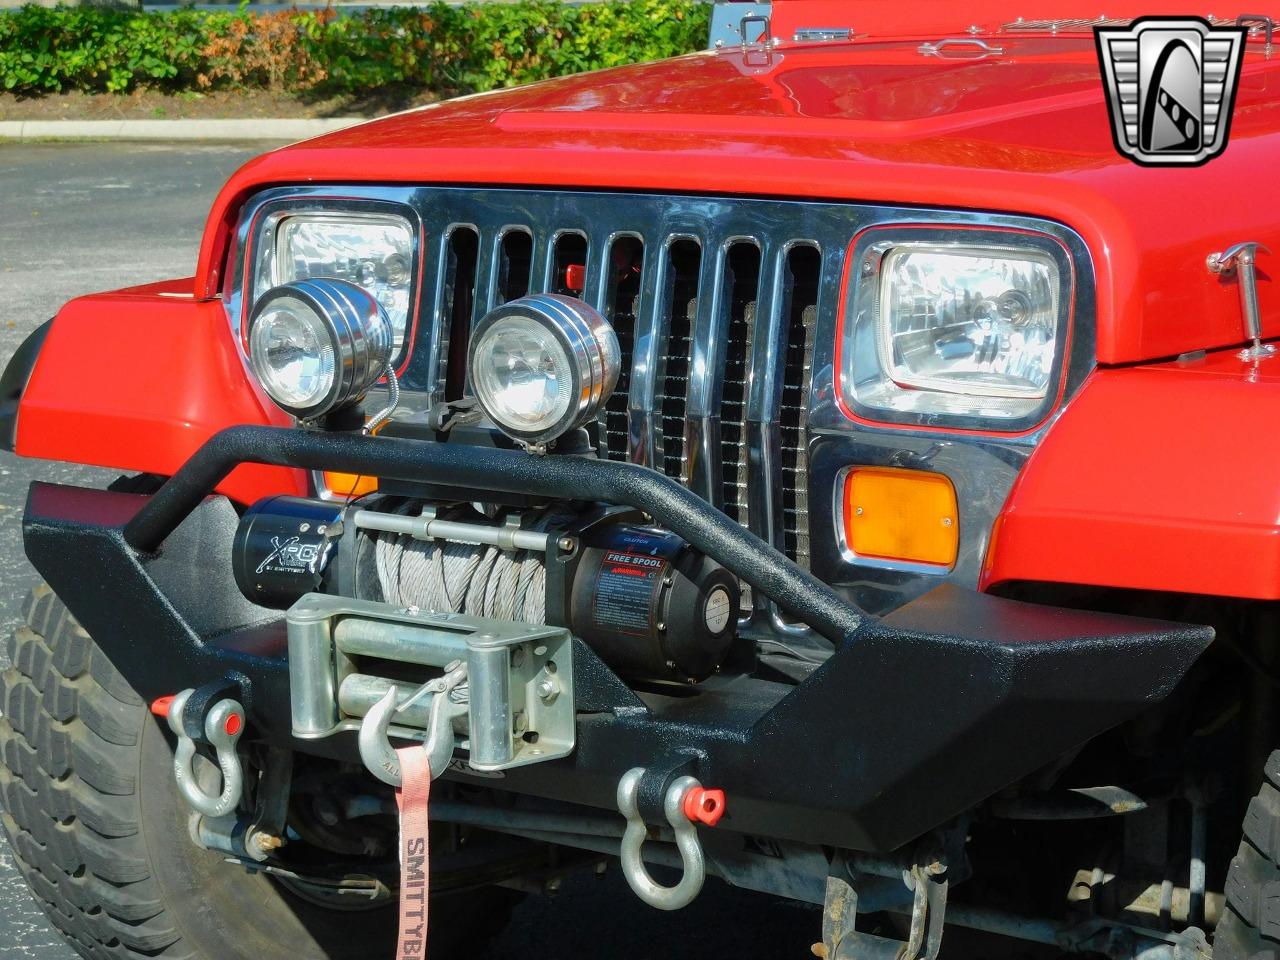 1994 Jeep Wrangler